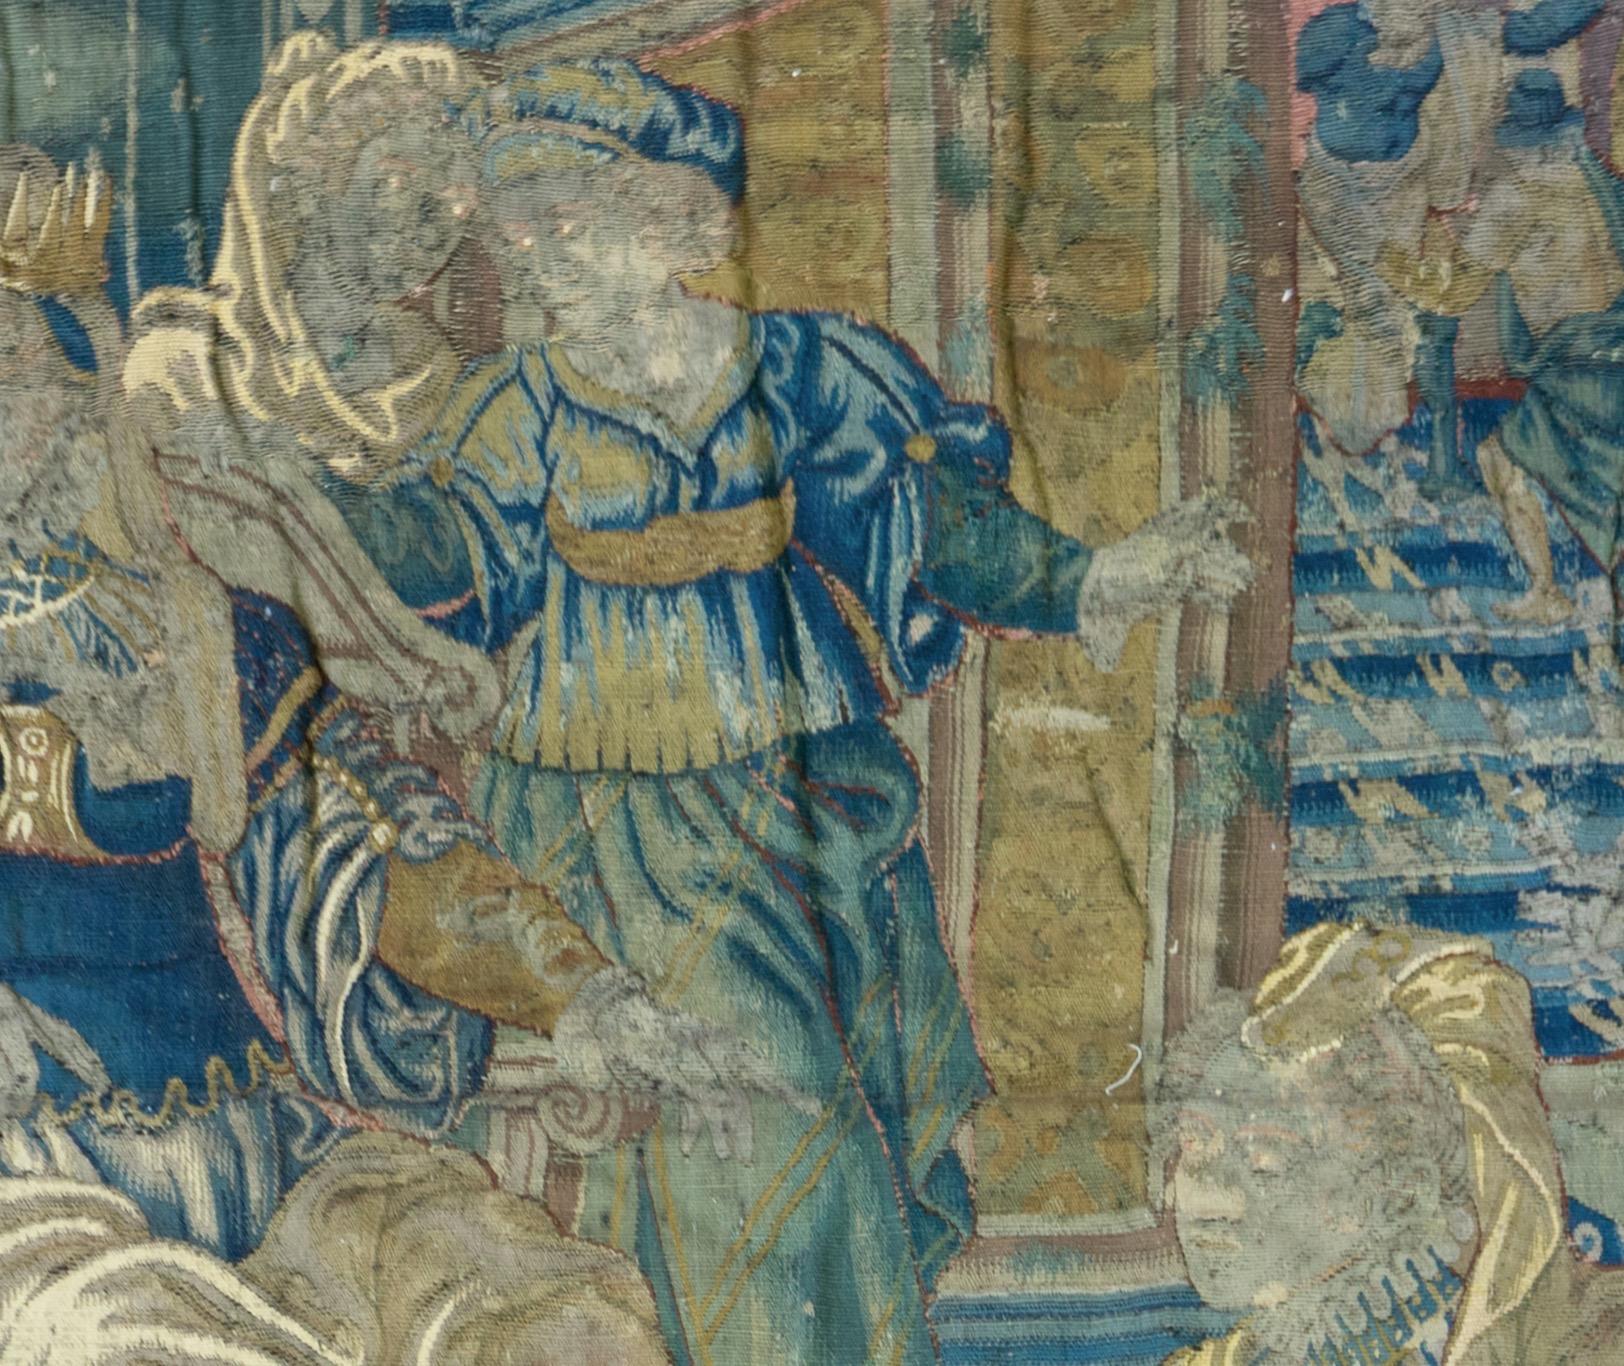 Tapisserie biblique de la Renaissance flamande
XVIe siècle
Dans un cadre architectural ouvert, la figure féminine centrale couronnée et trônant est flanquée de trois servantes, une quatrième à gauche poussant un garçon vers une femme agenouillée à